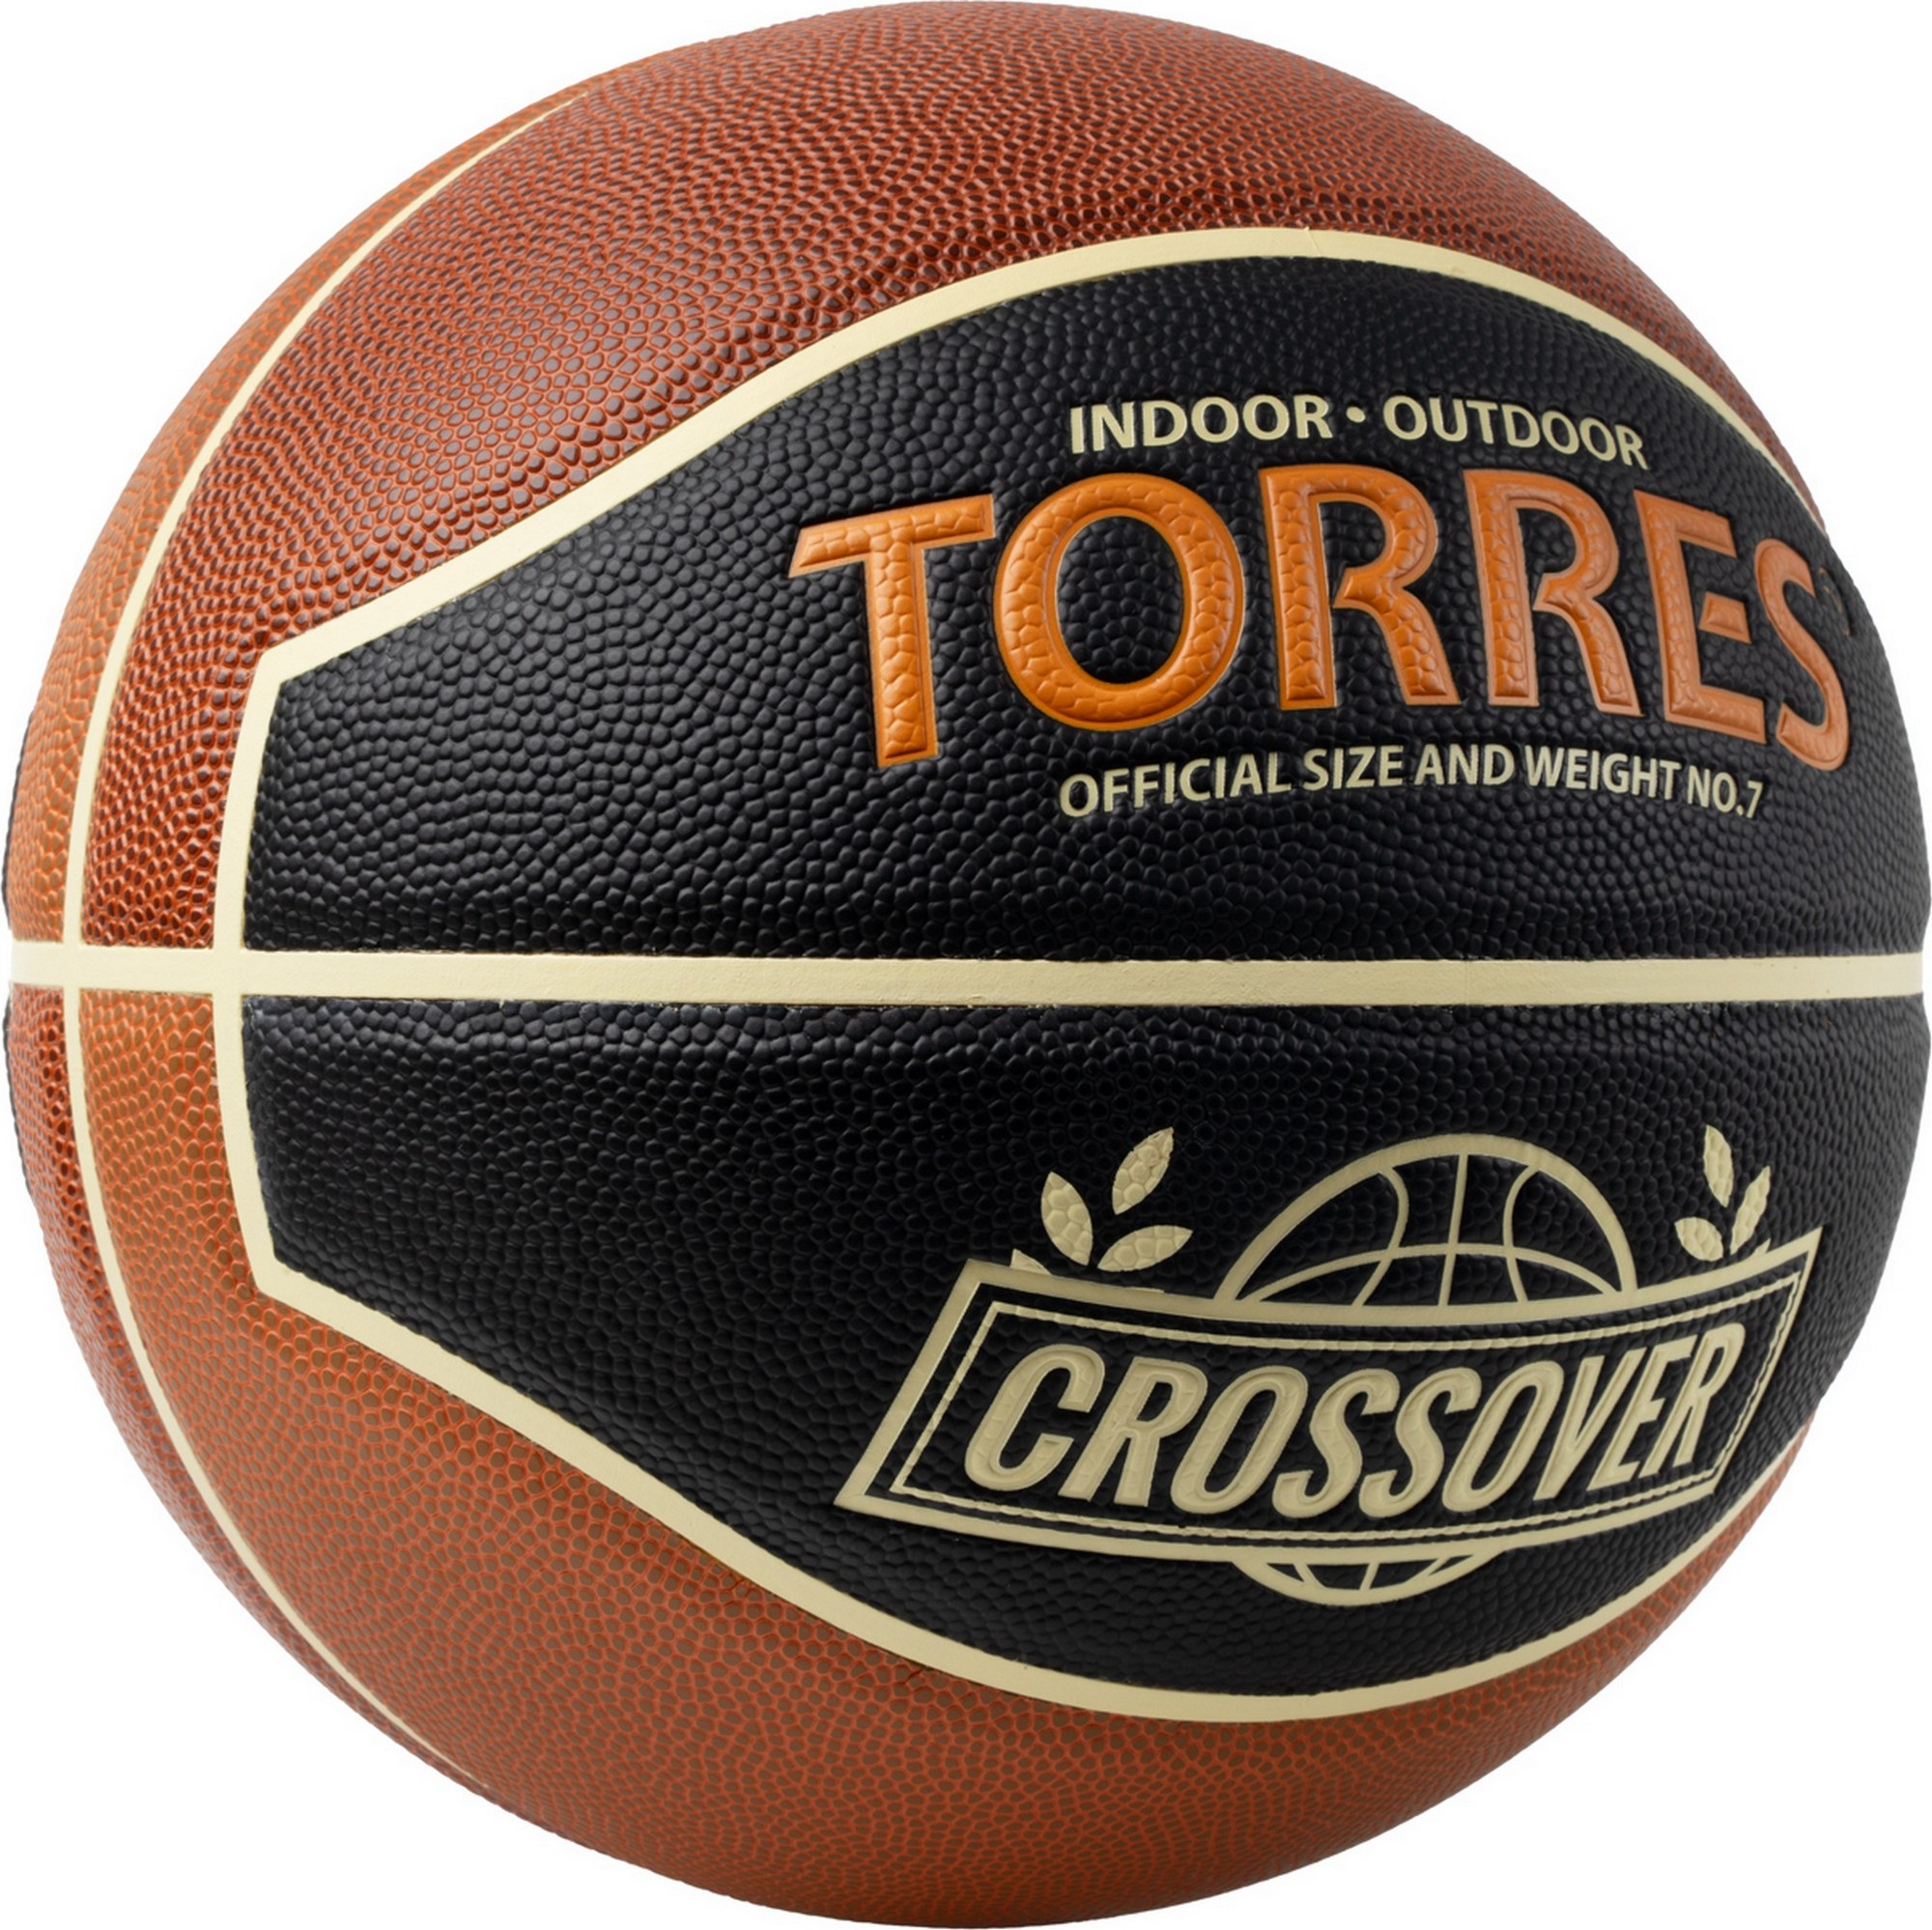 Мяч баскетбольный Torres Crossover B323197 р.7 2000_1998